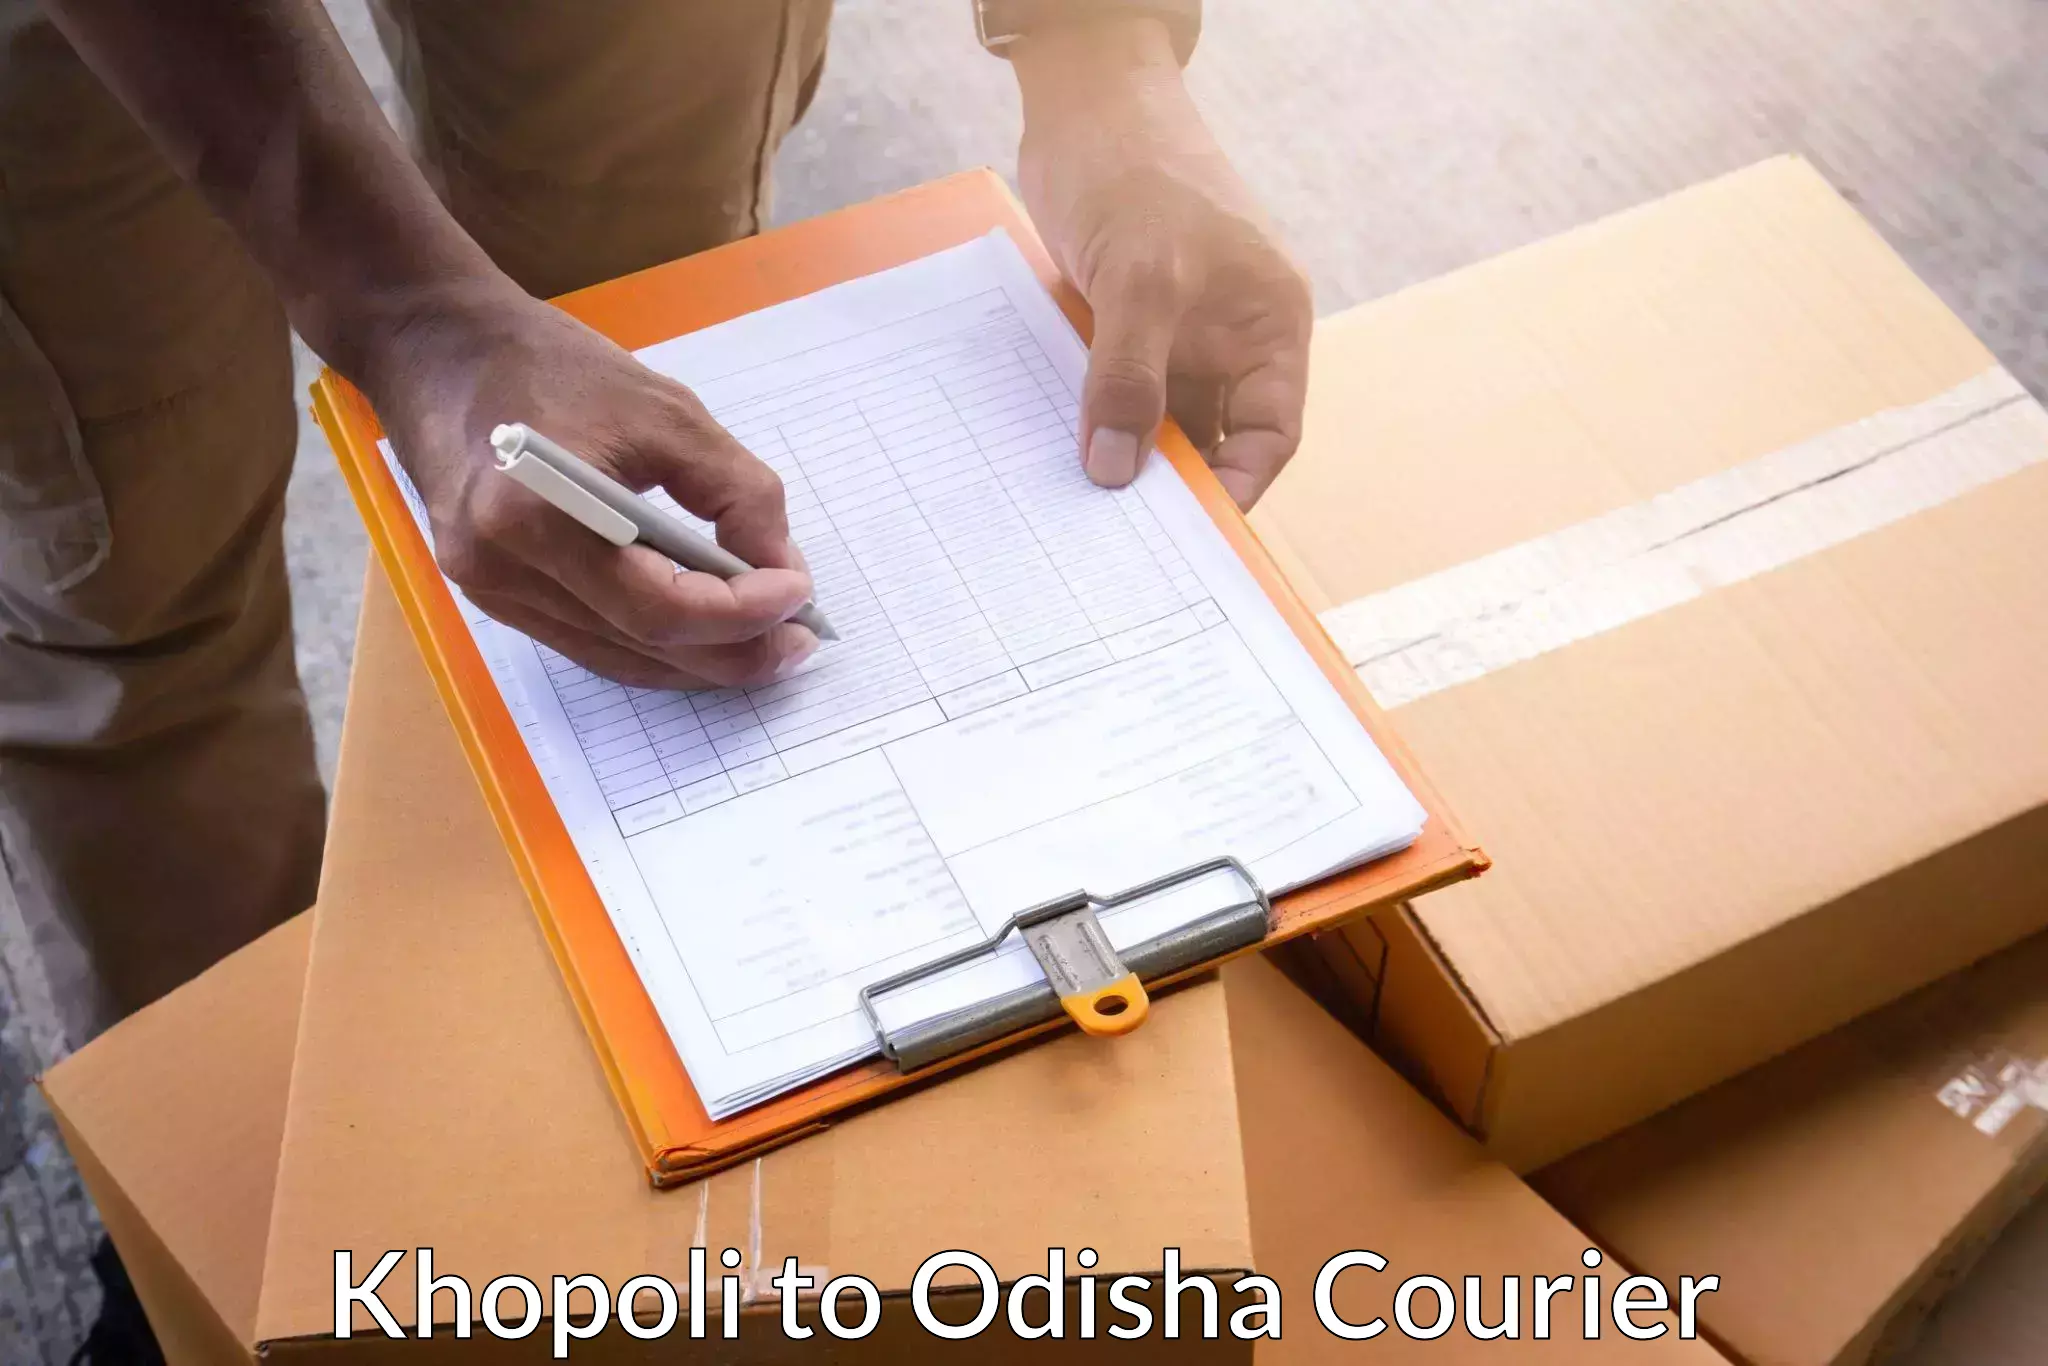 Automated parcel services Khopoli to Ukhunda